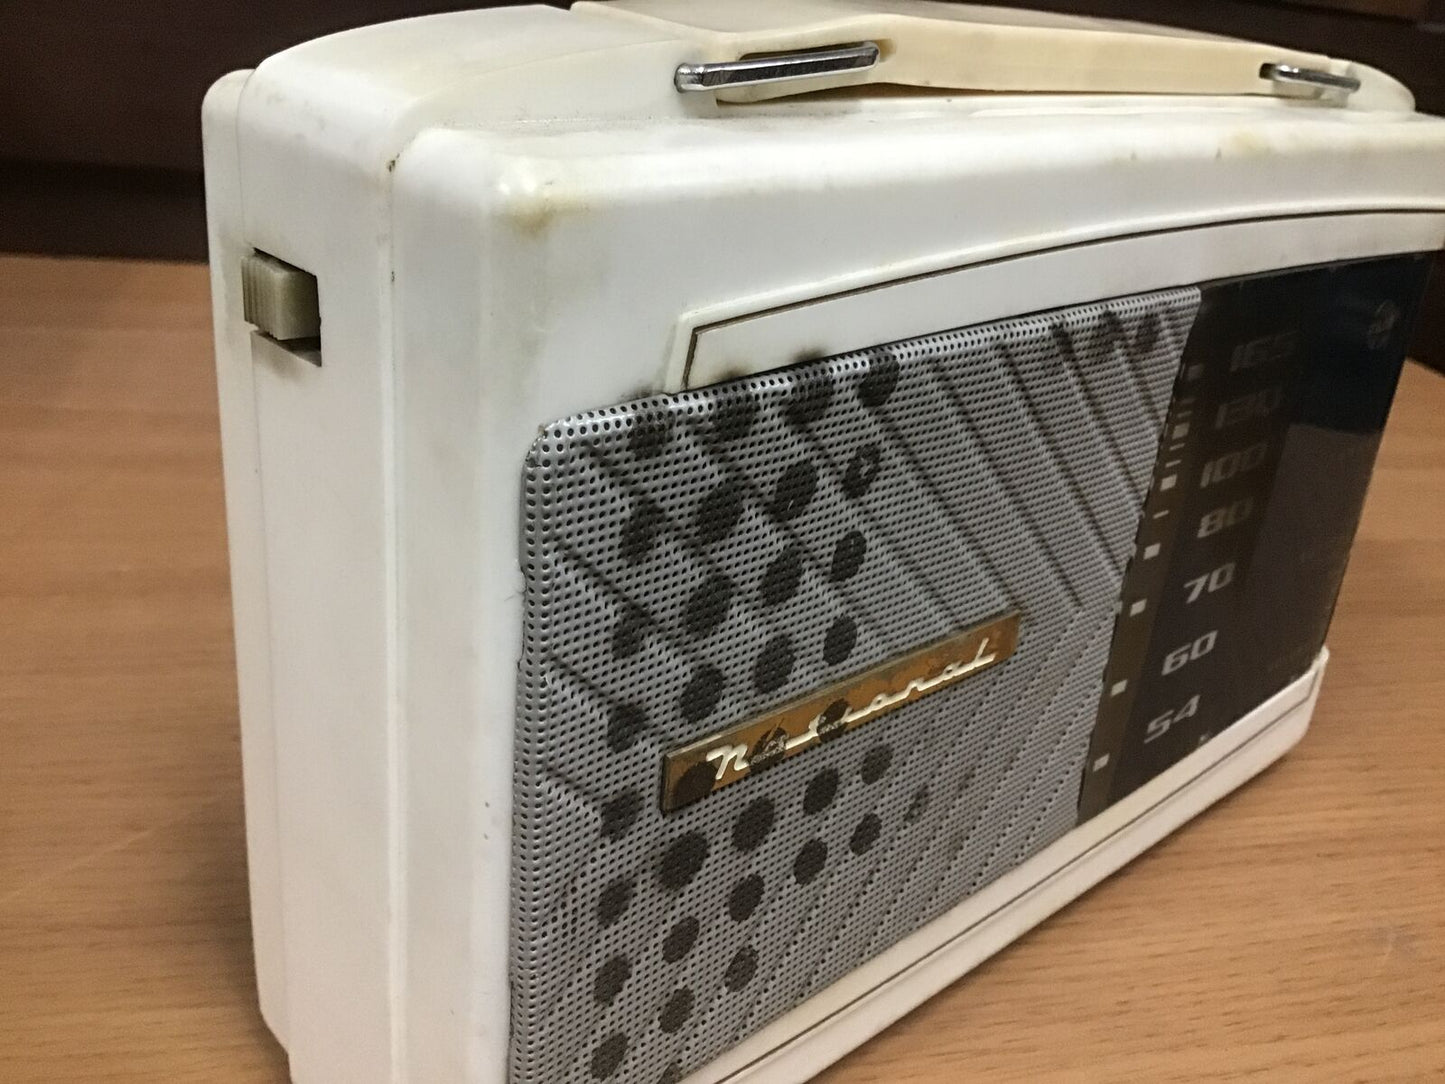 Y0941 RADIO NATIONAL transistor portable handle Japanese antique vintage